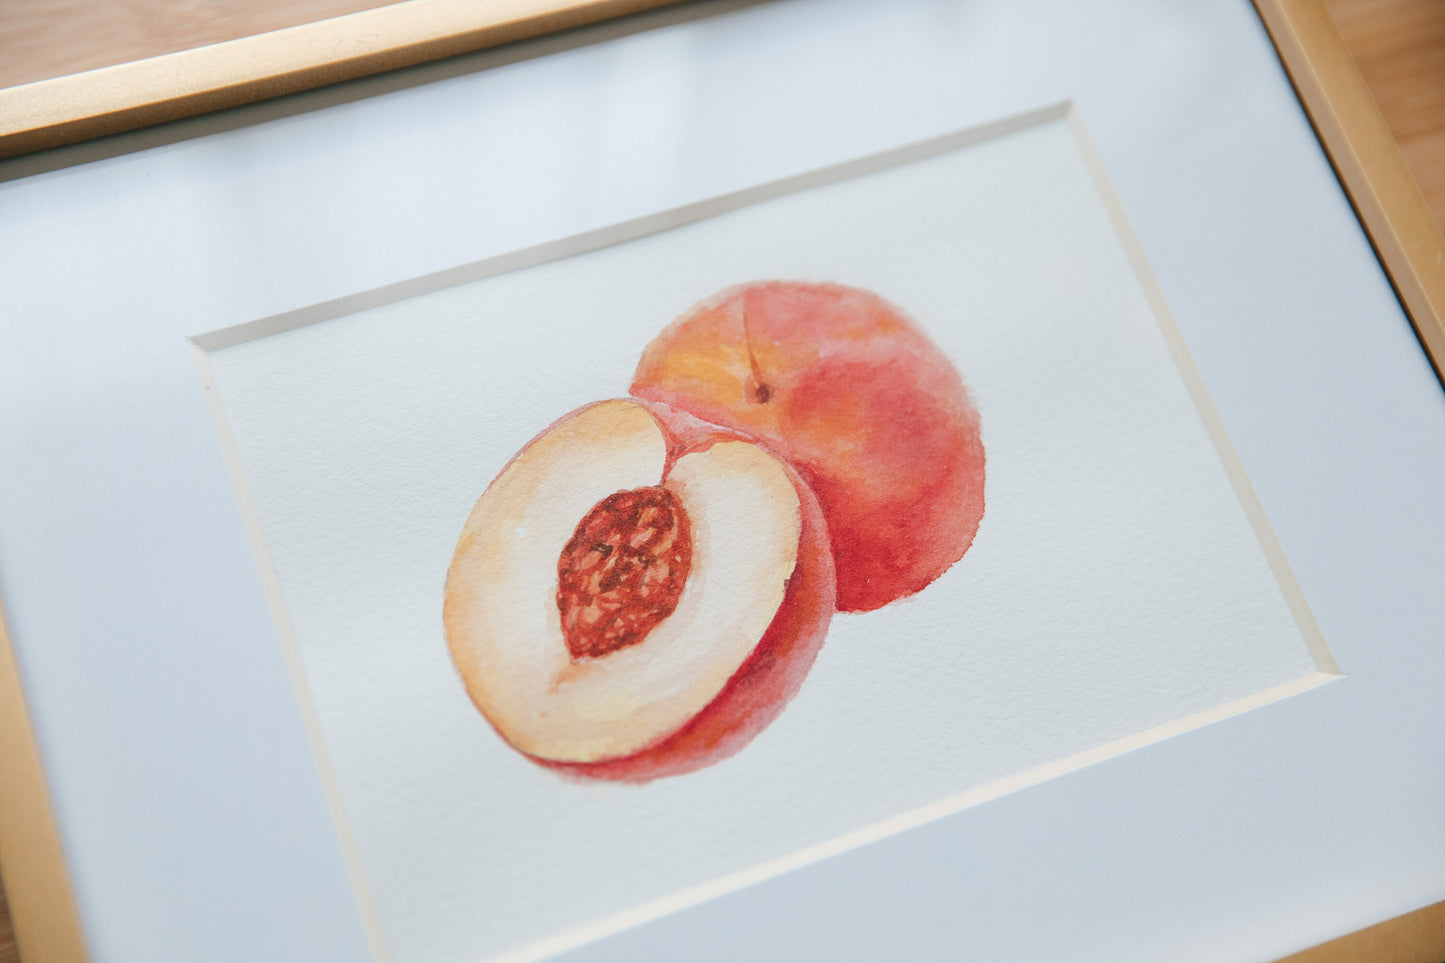 Original peach watercolor illustration. 6x6in